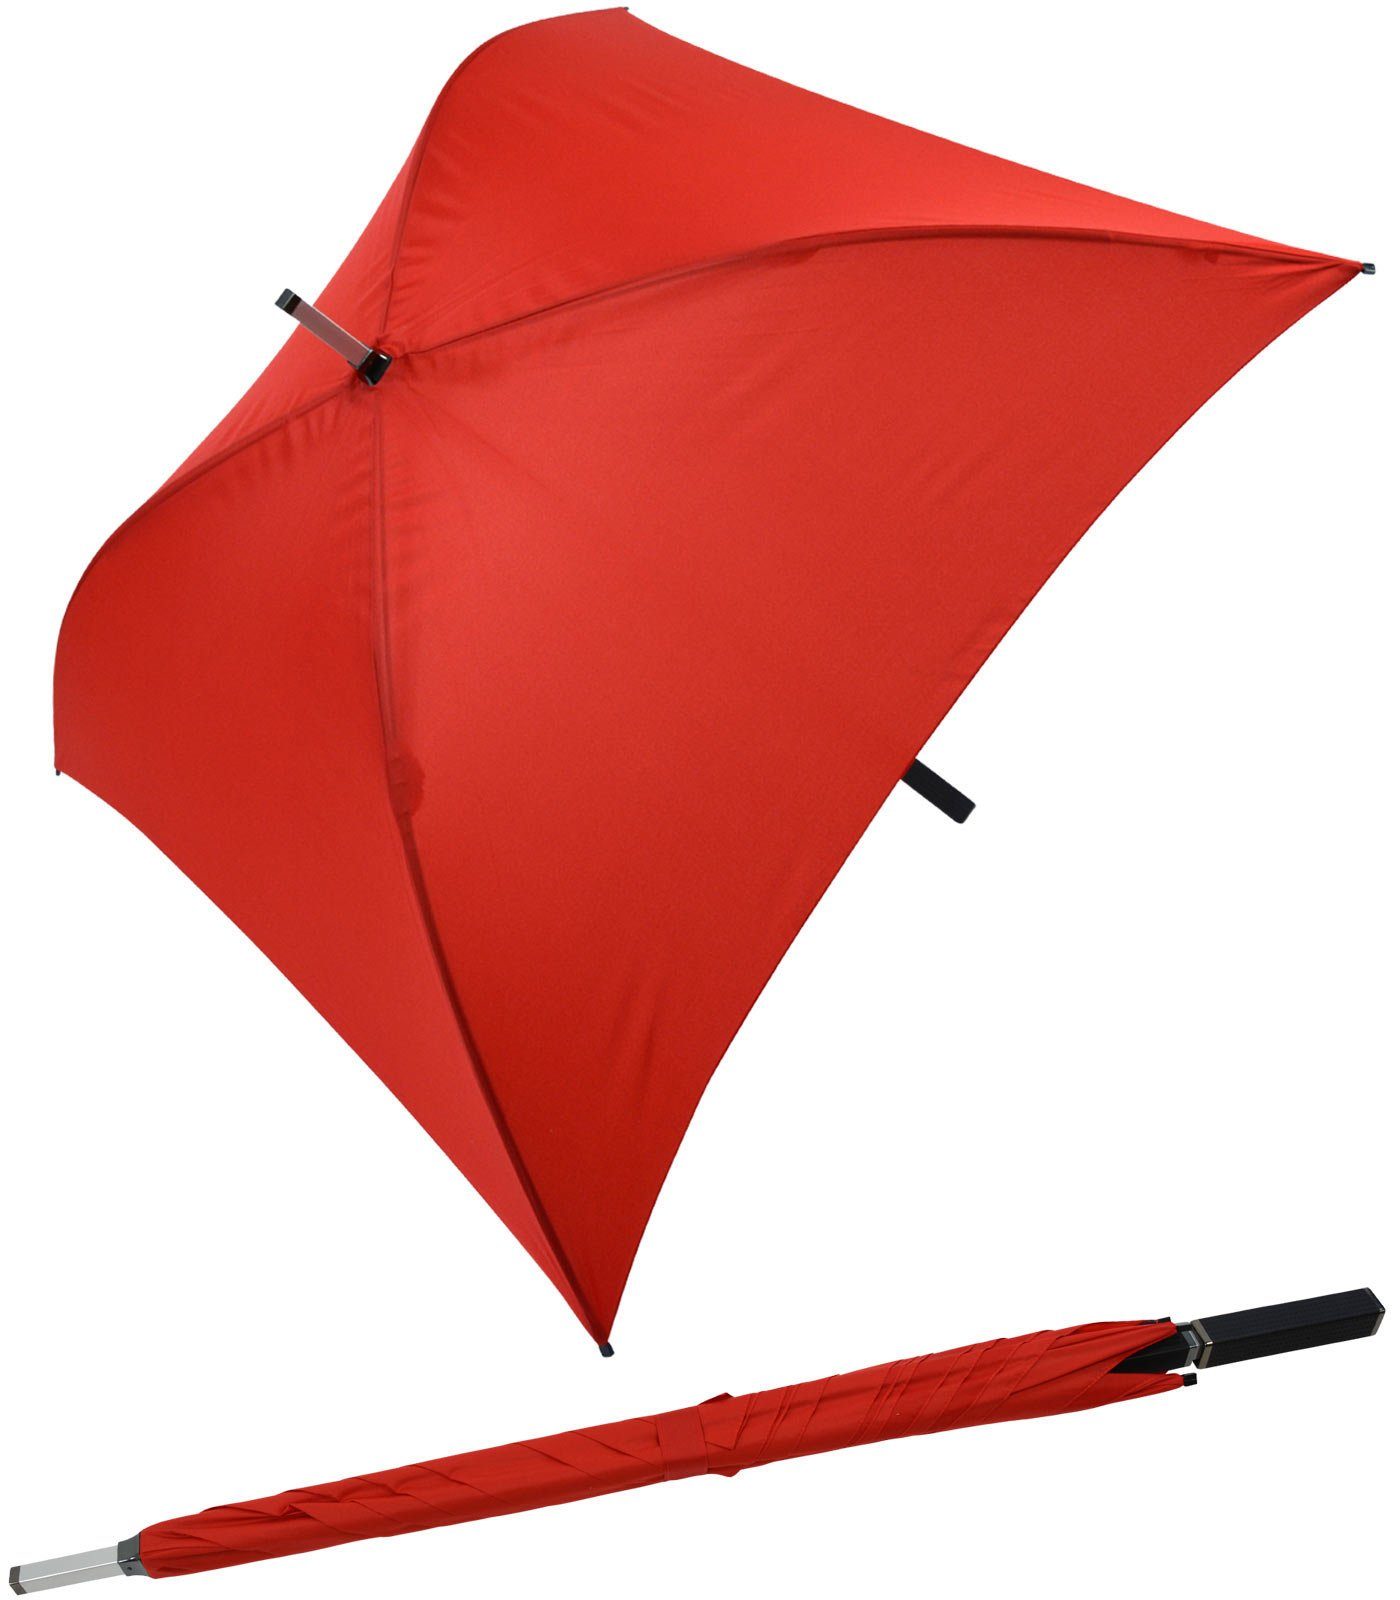 Angezogen Impliva Langregenschirm All Square® voll der rot Regenschirm quadratischer besondere Regenschirm, ganz